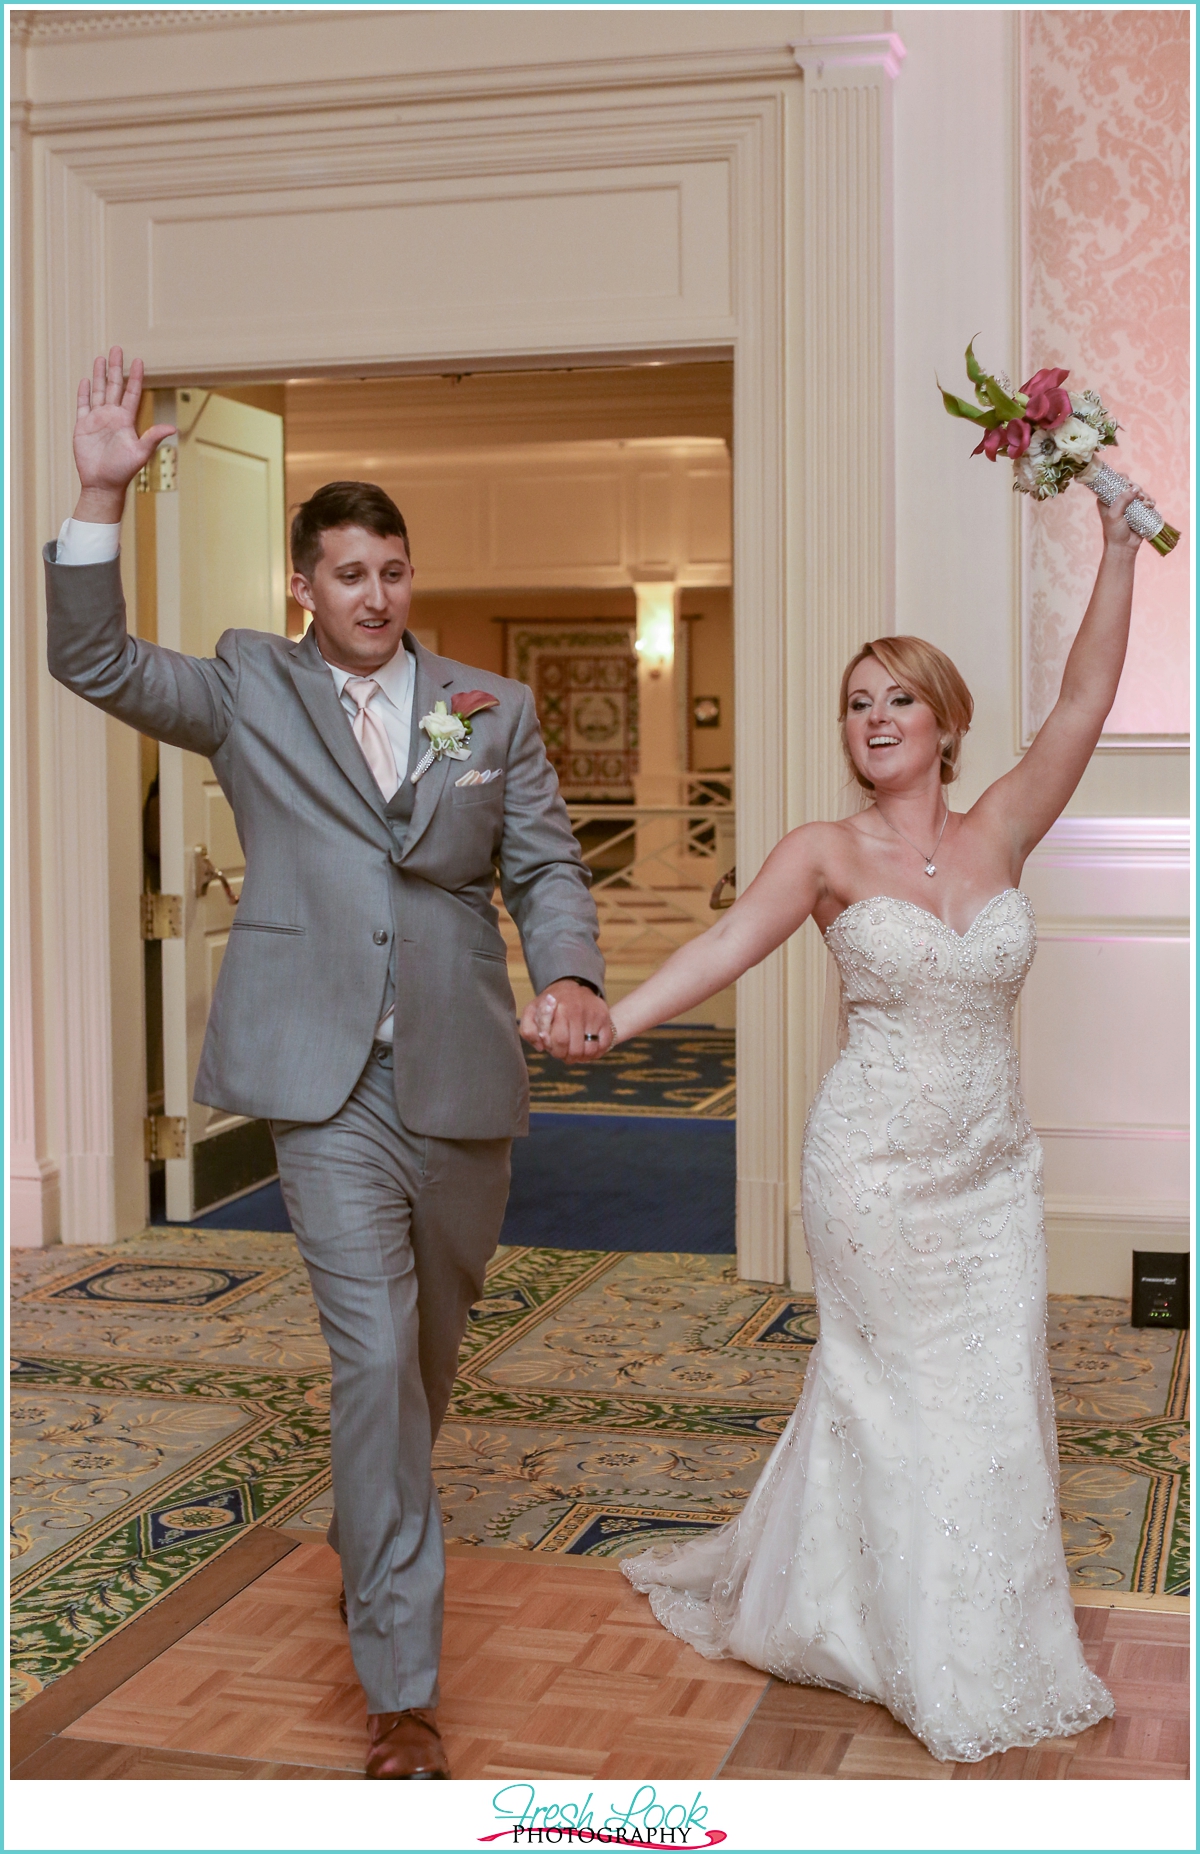 Bride and groom entering reception